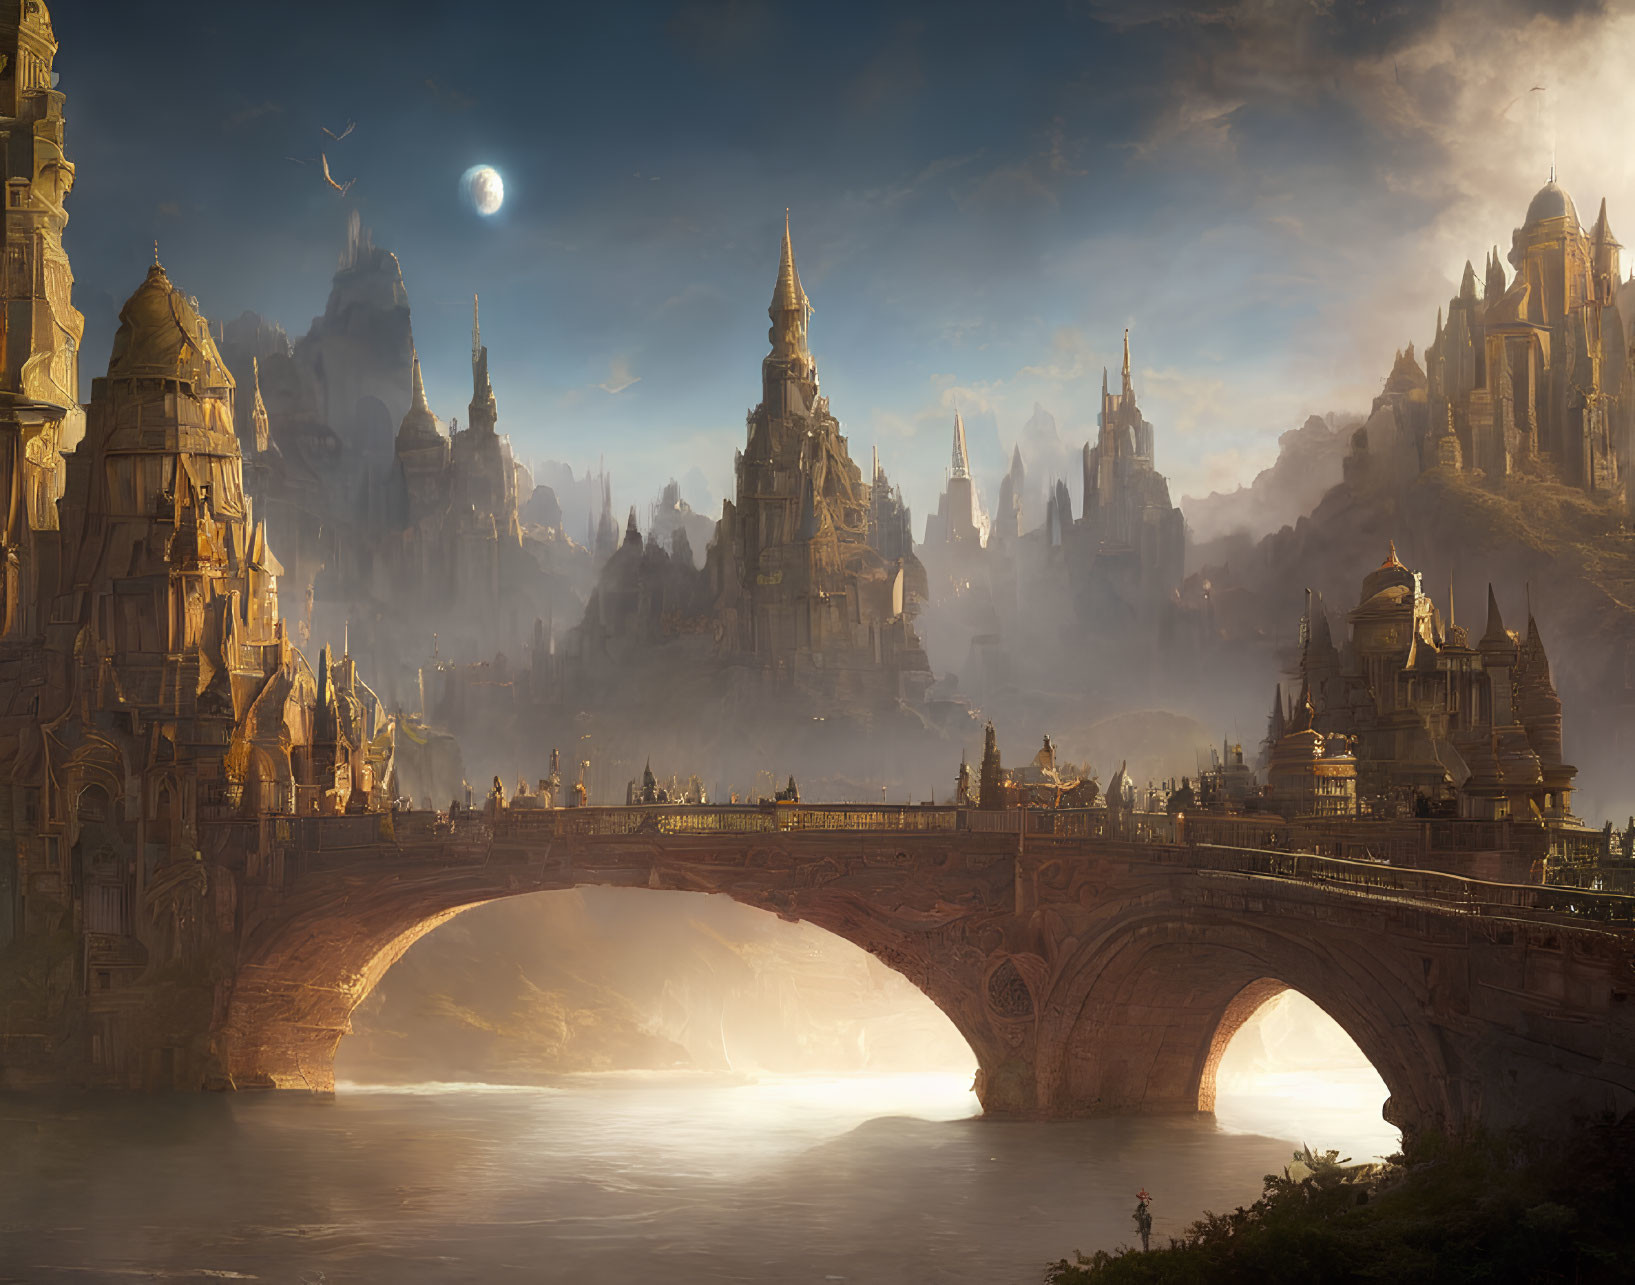 Majestic castles and stone bridge in fantasy landscape